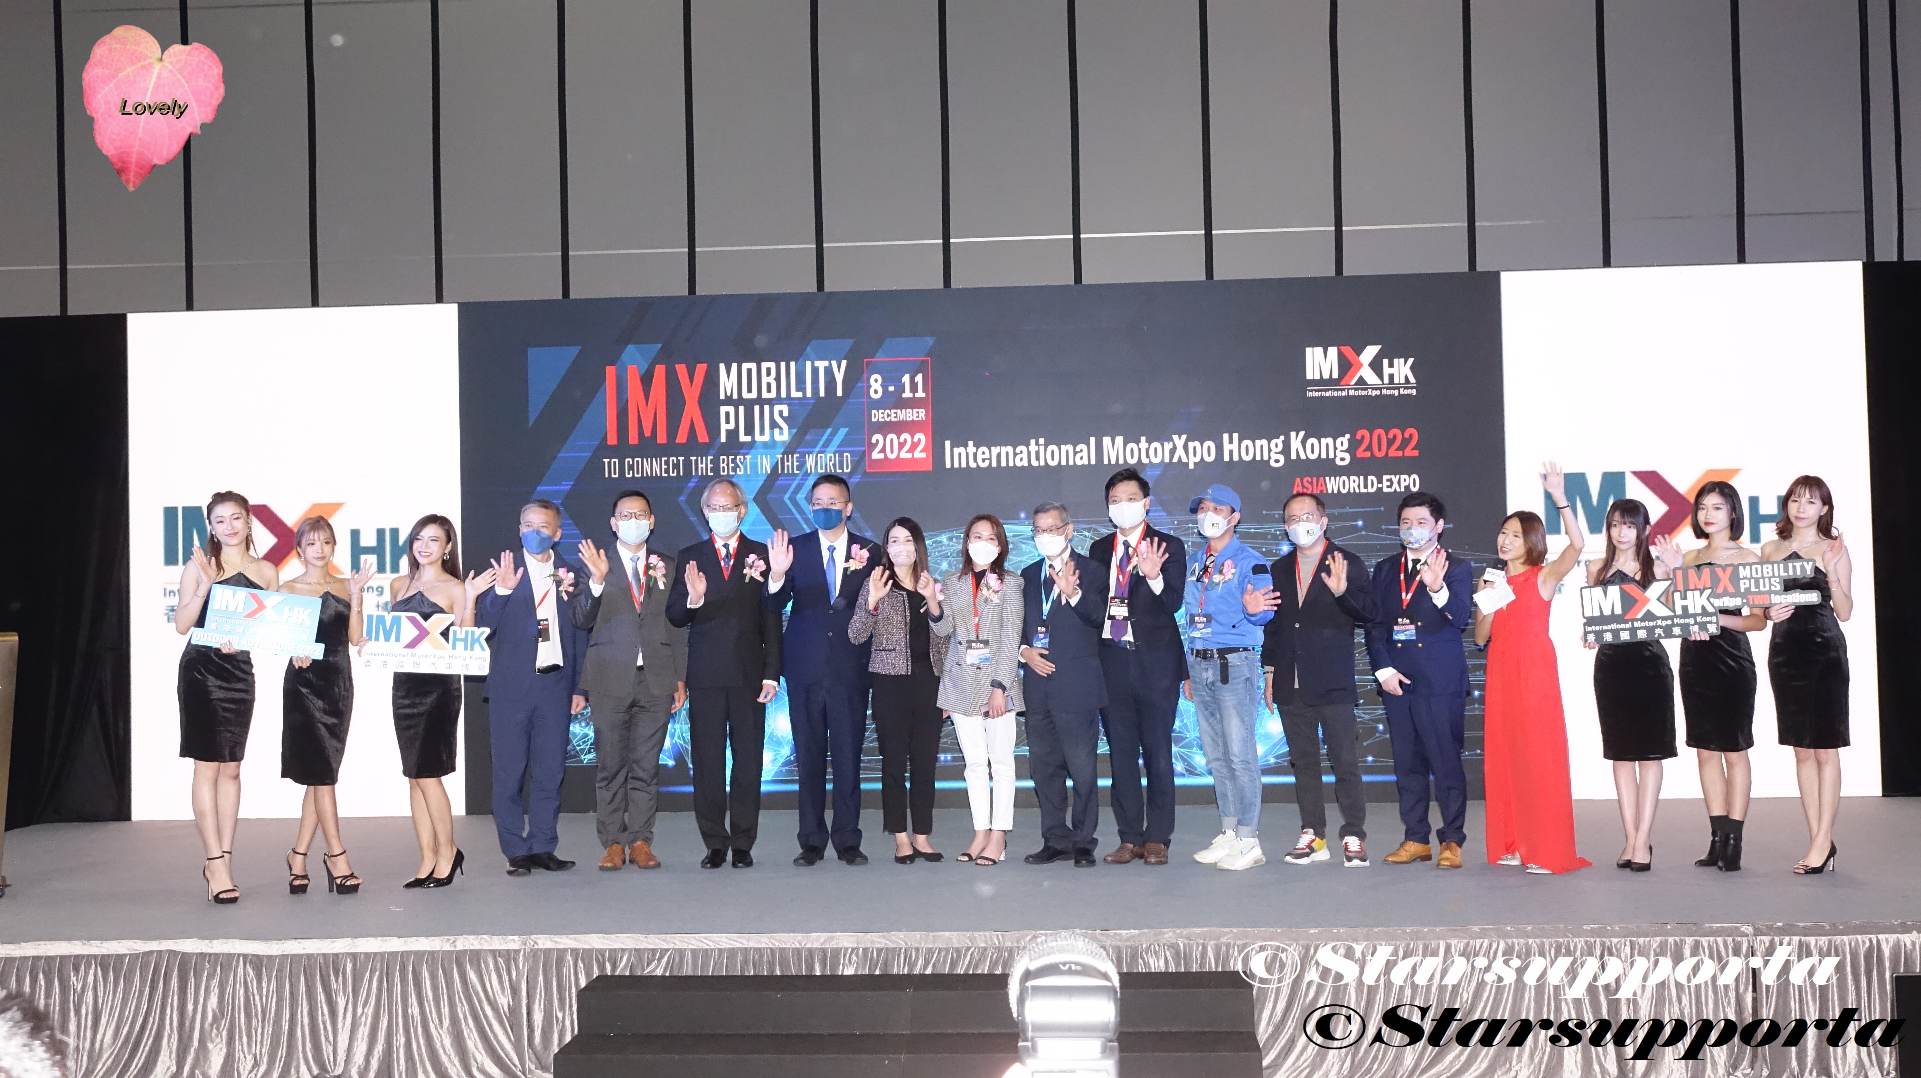 20221208 香港國際汽車博覽 IMXHK 開幕 @ 香港亞洲國際博覽館